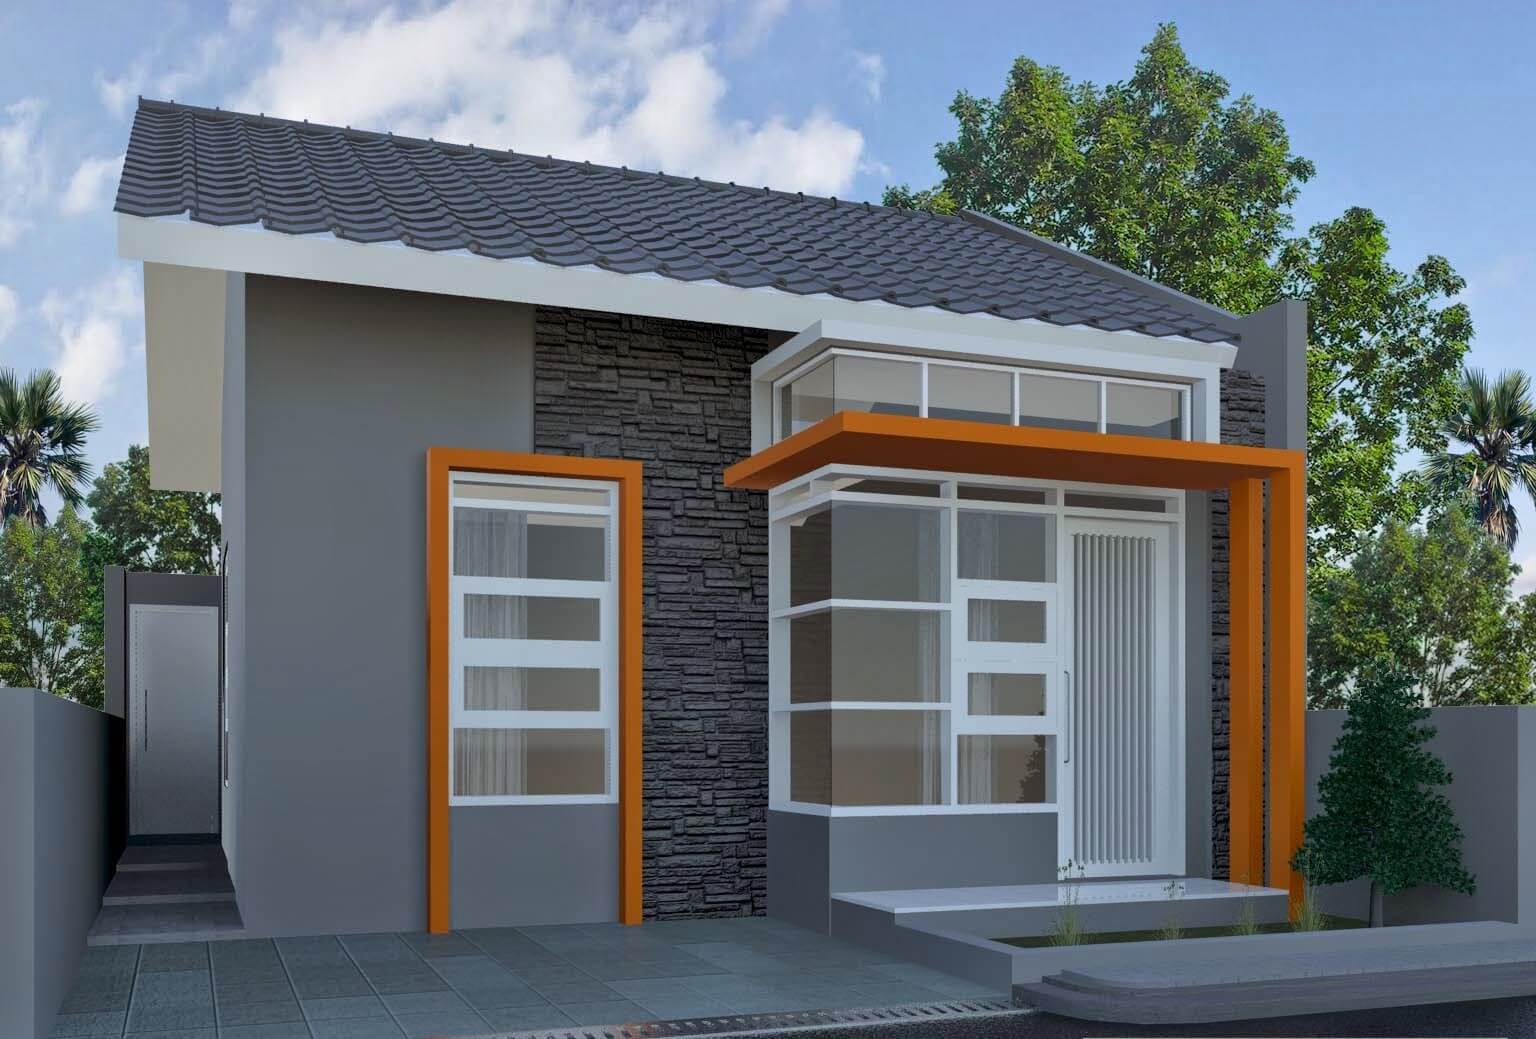 Model Desain  Rumah  Sederhana  Bentuk rumah  sederhana  